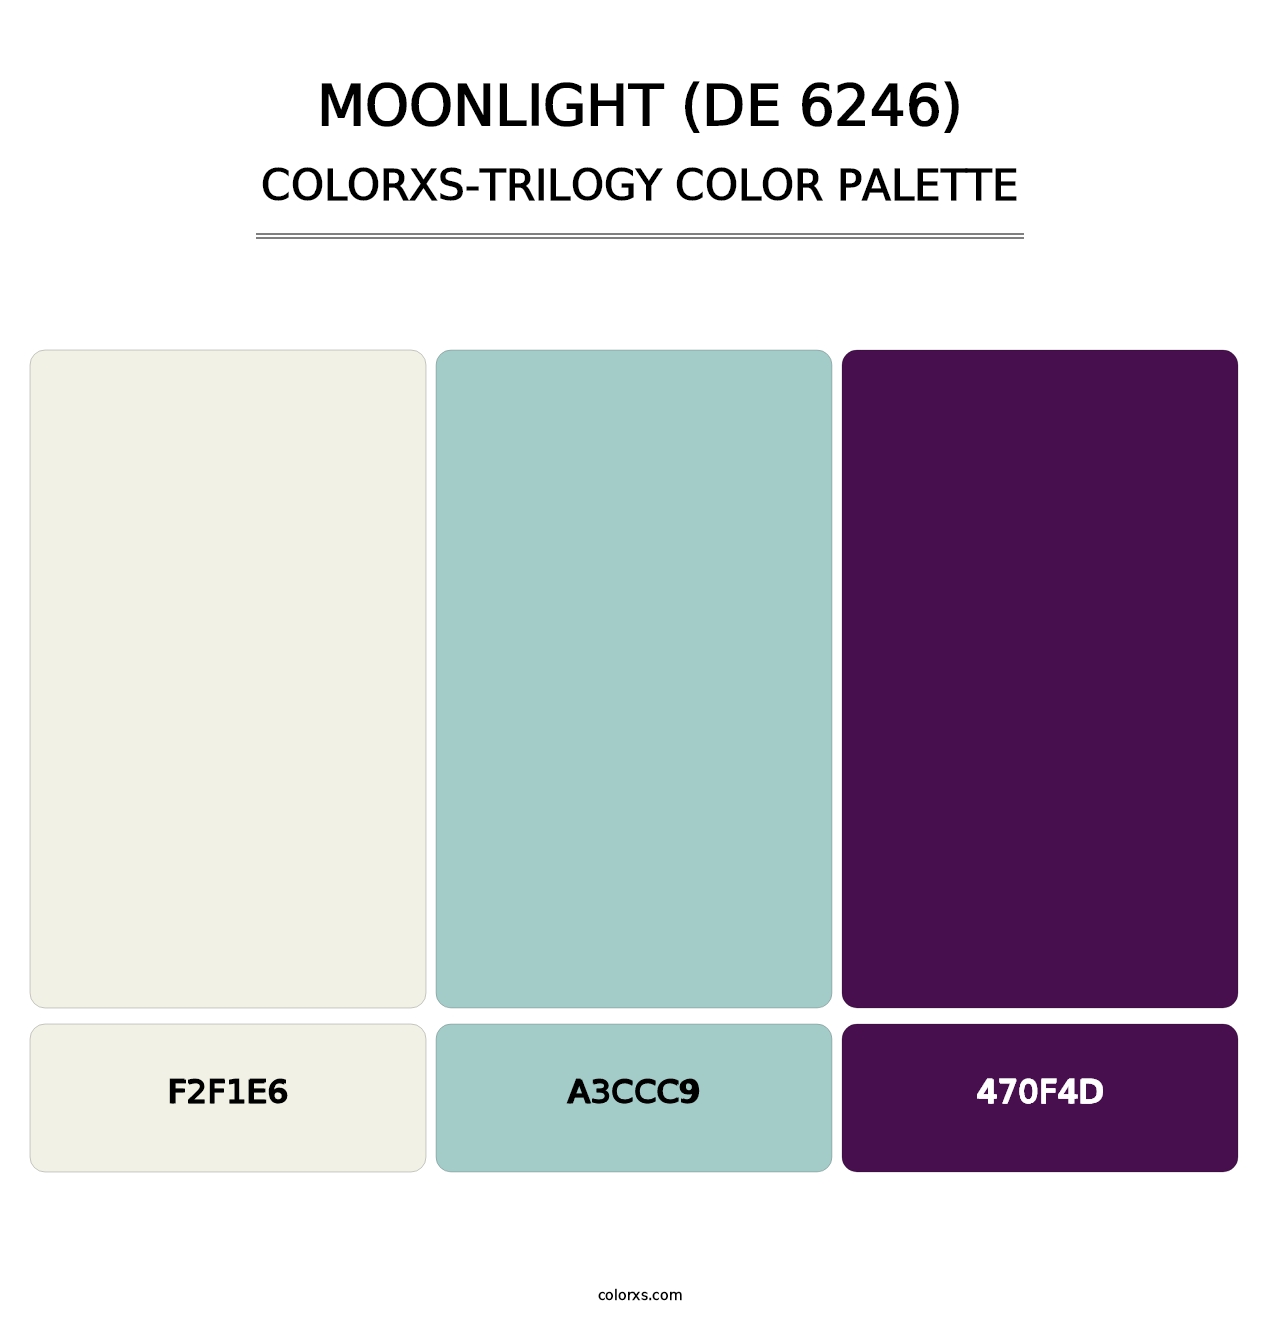 Moonlight (DE 6246) - Colorxs Trilogy Palette